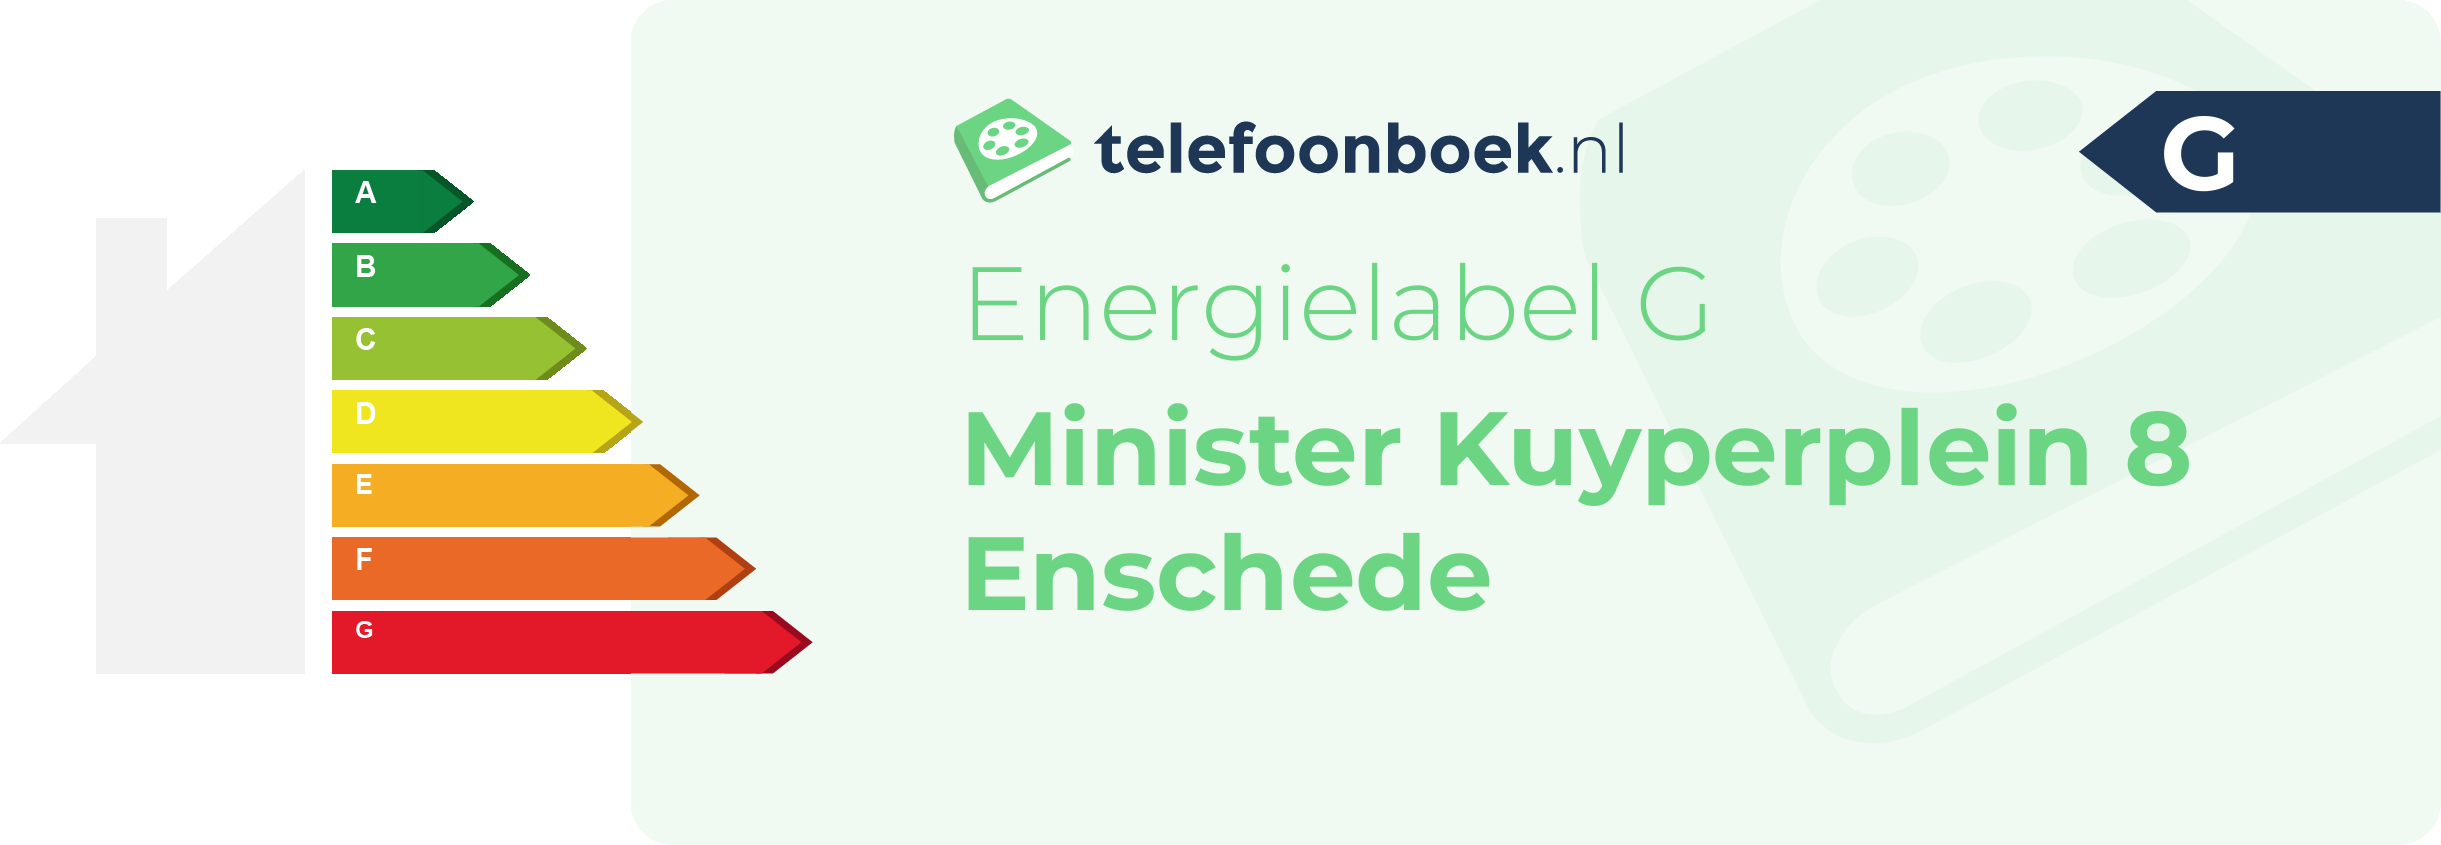 Energielabel Minister Kuyperplein 8 Enschede